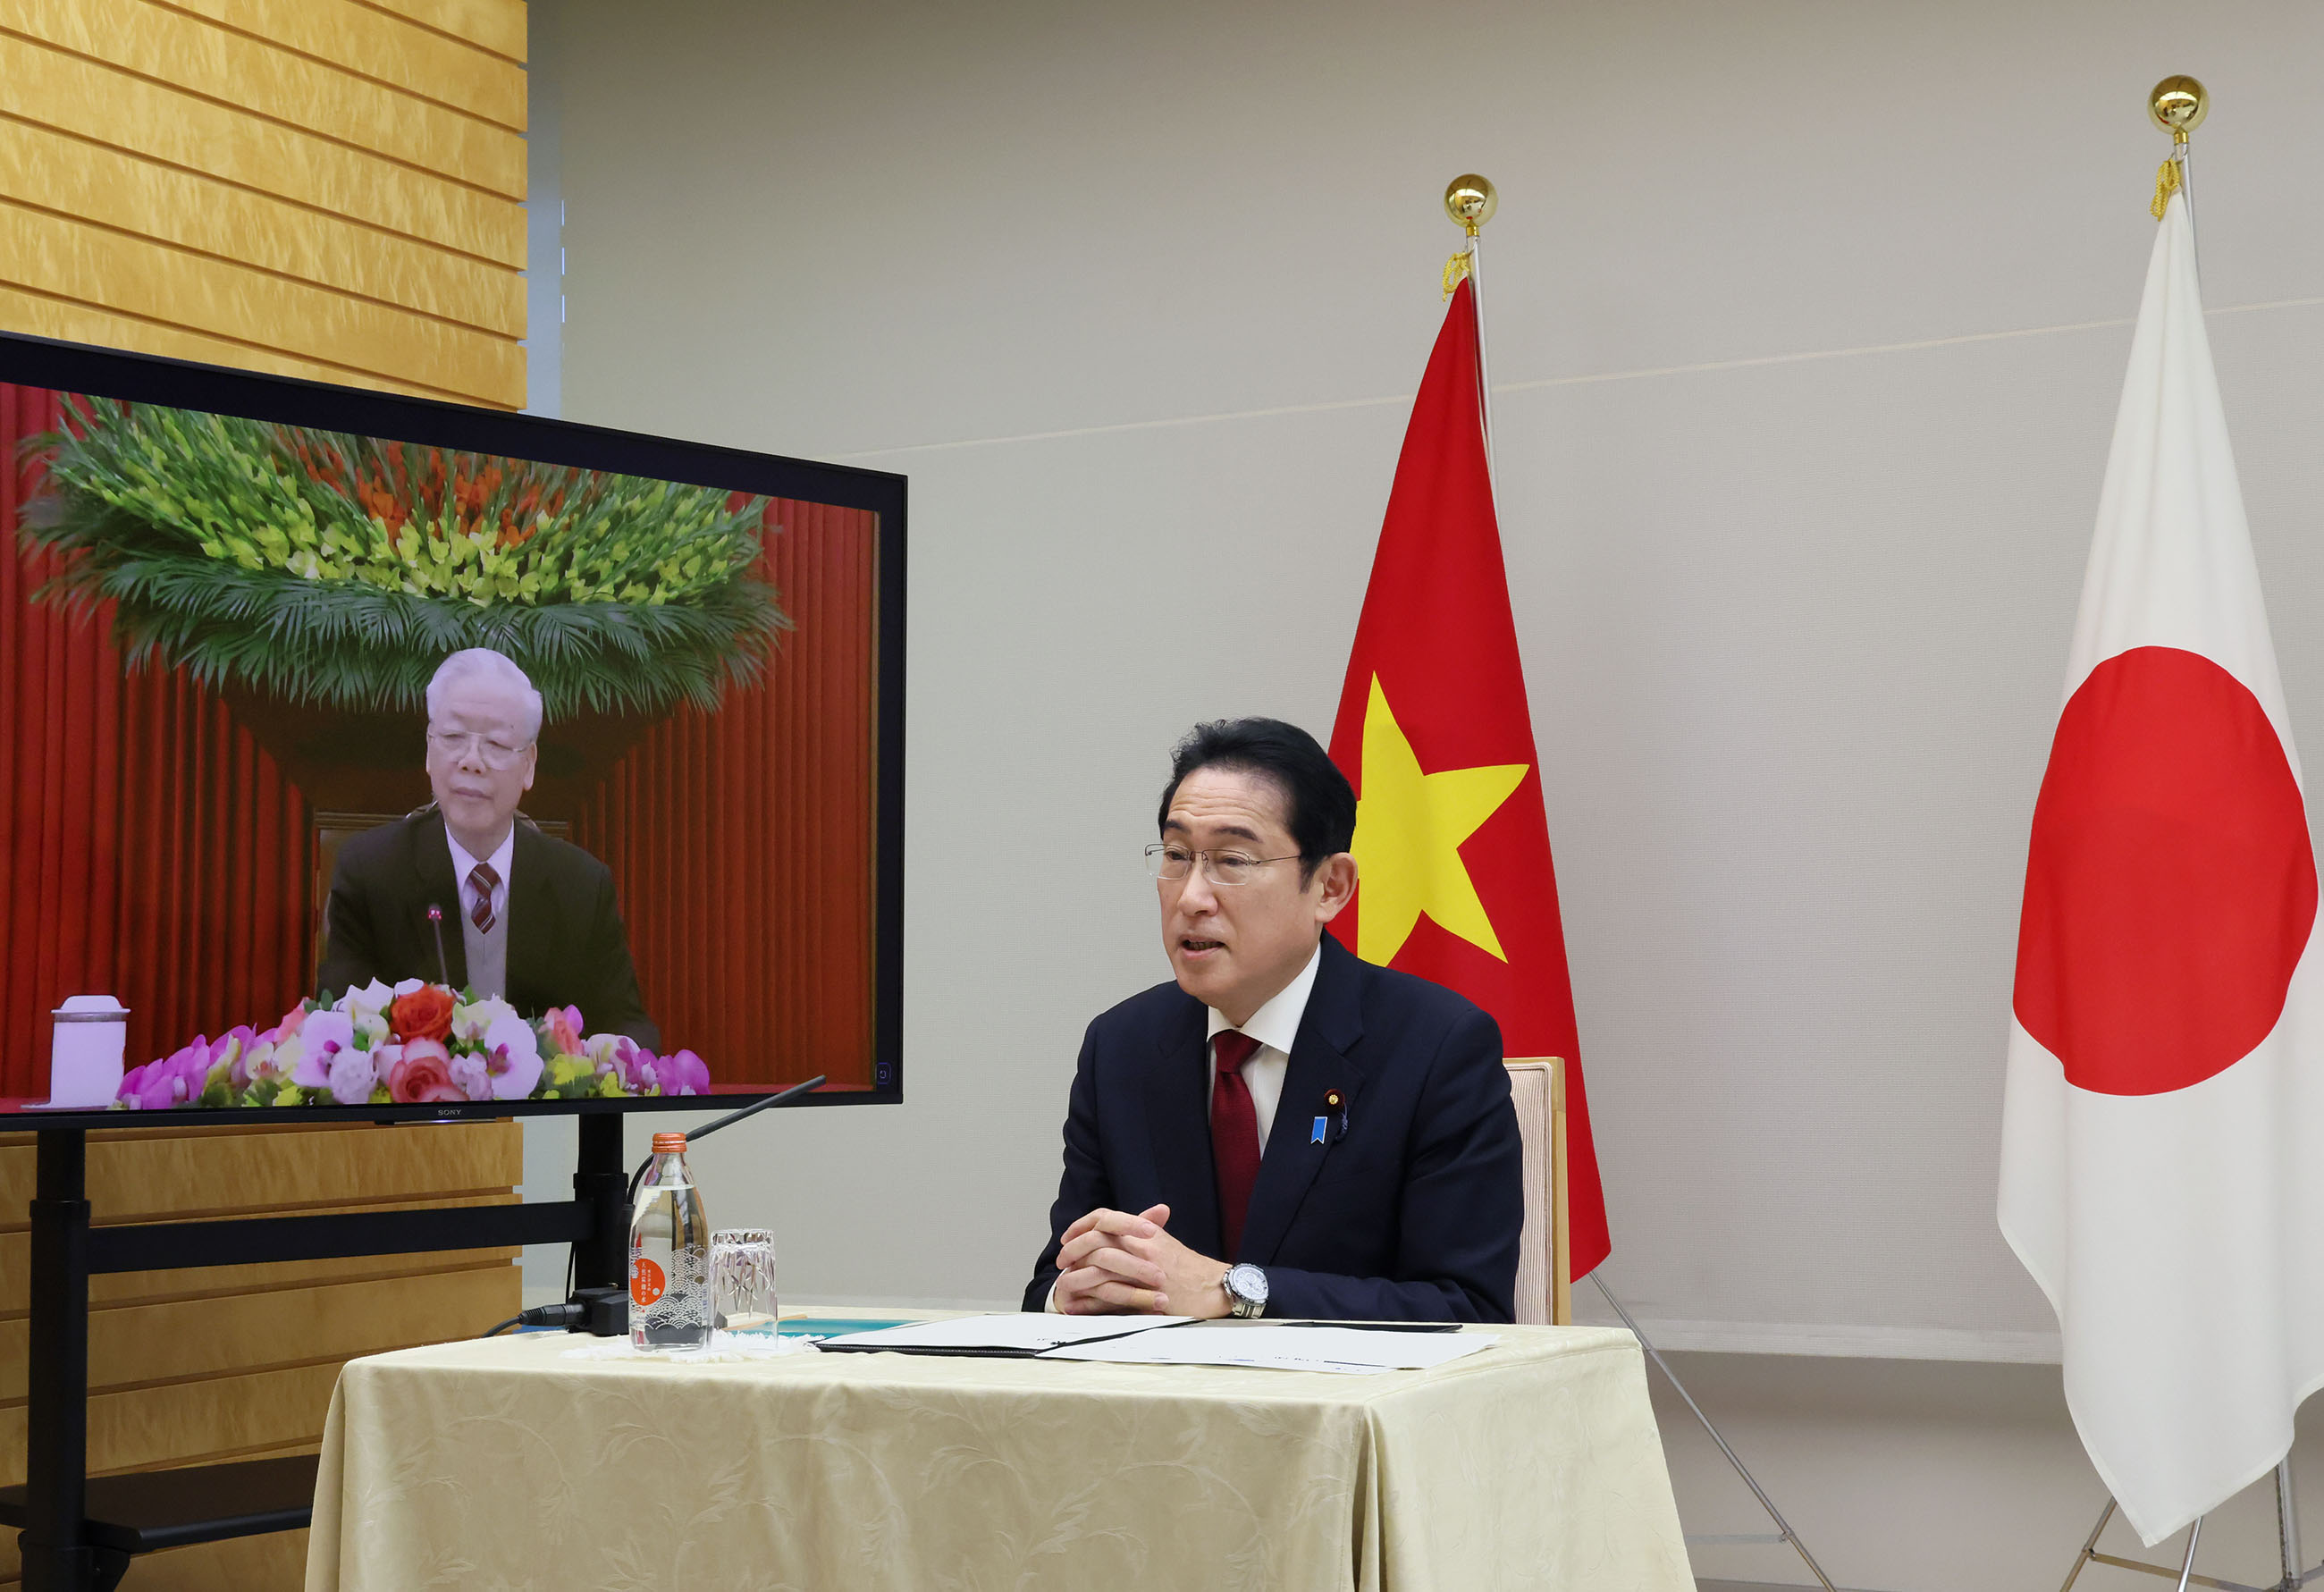 チョン・ベトナム共産党書記長とテレビ会談を行う岸田総理２